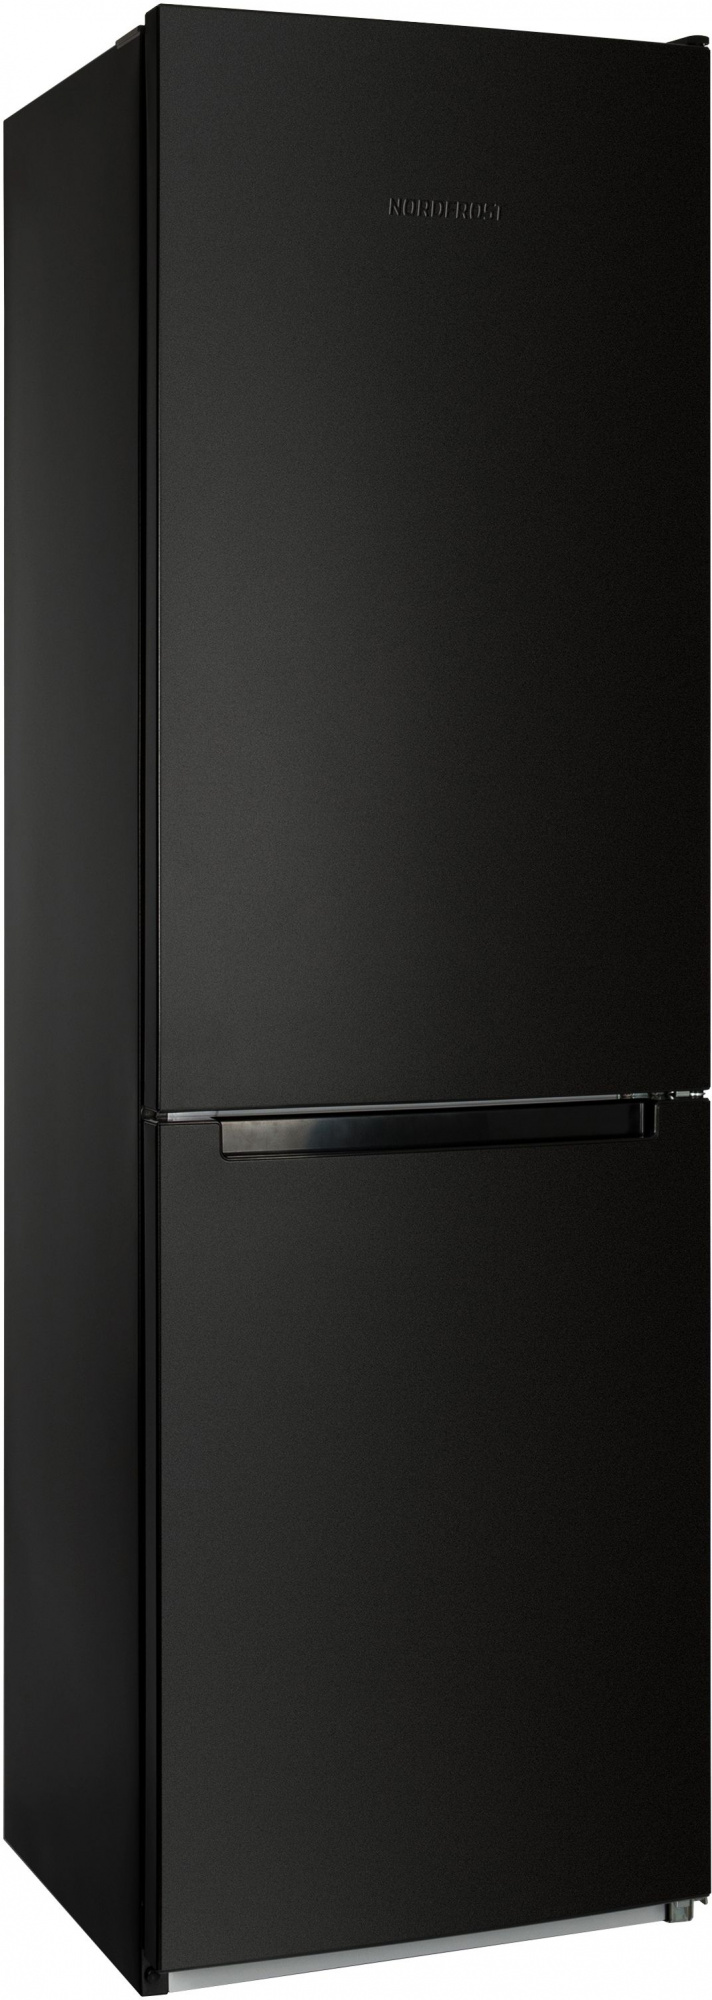 Холодильник Nordfrost NRB 152 B, черный 